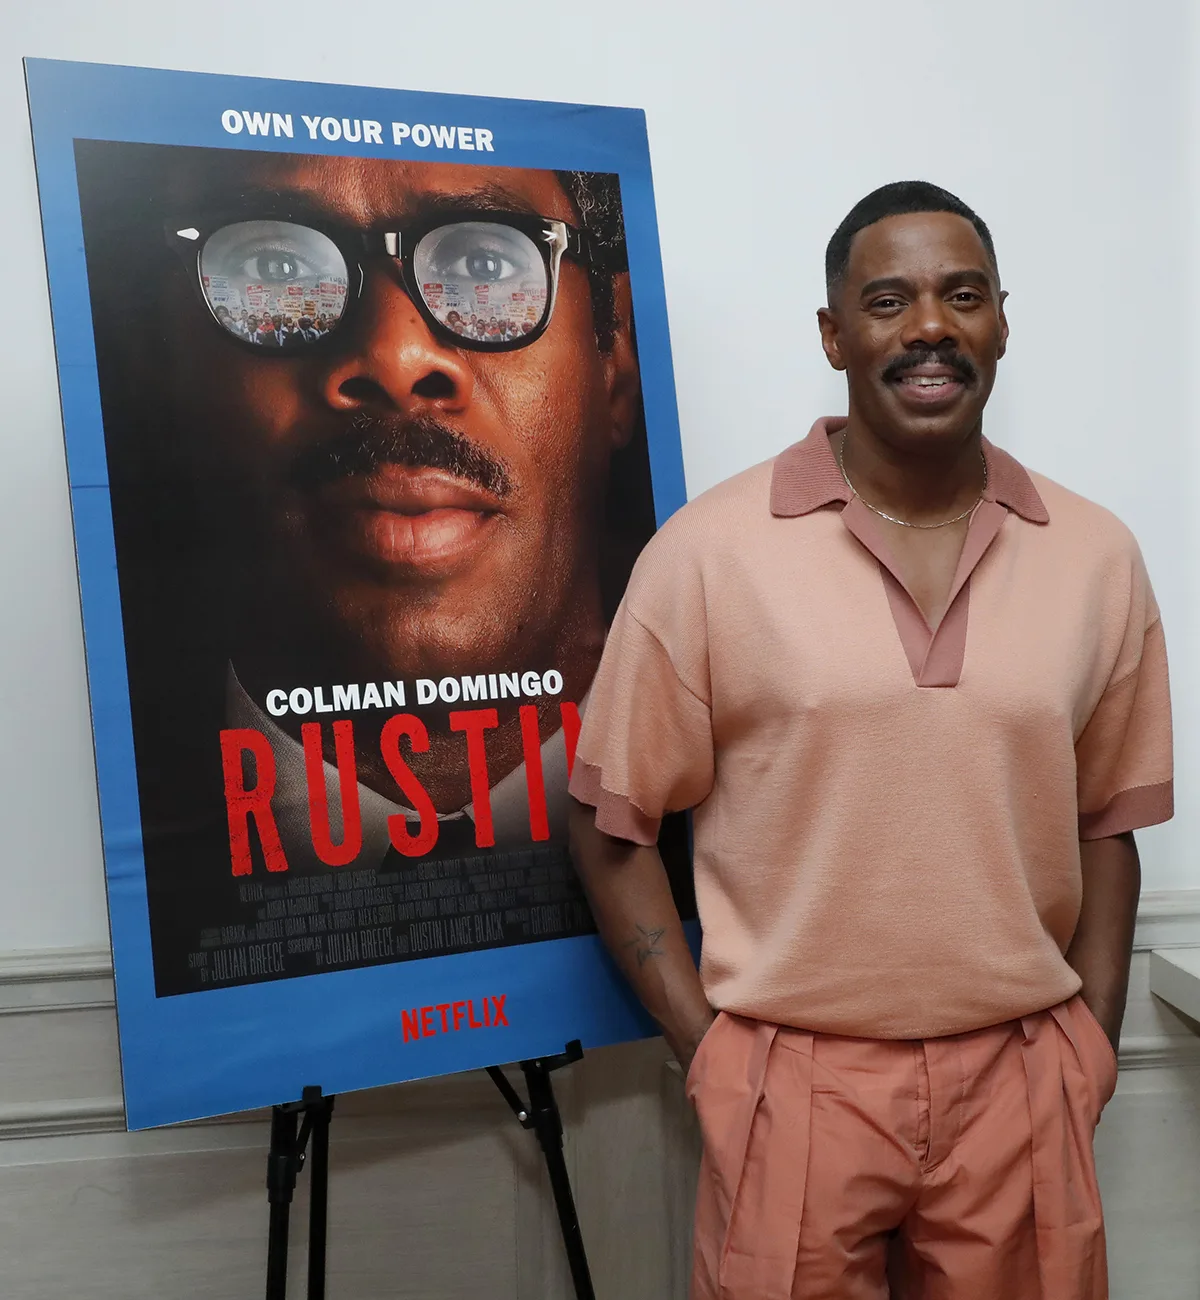 Drama gay ignorado na Netflix, "Rustin" recebe indicação ao Oscar